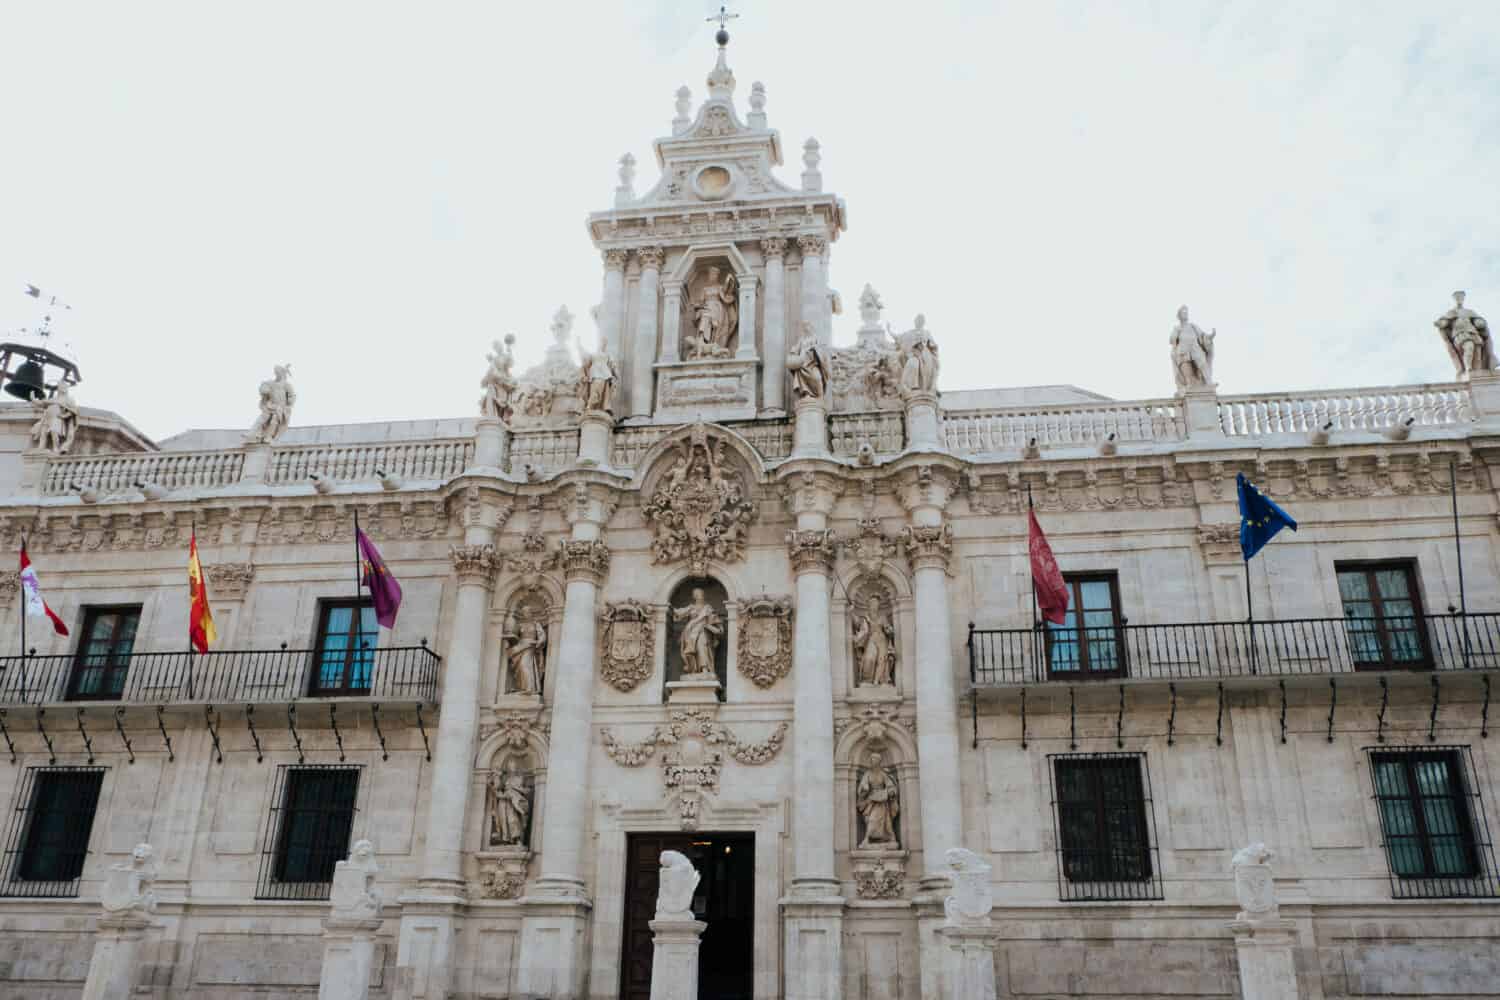 Baroque facade of the University of Valladolid, Spain